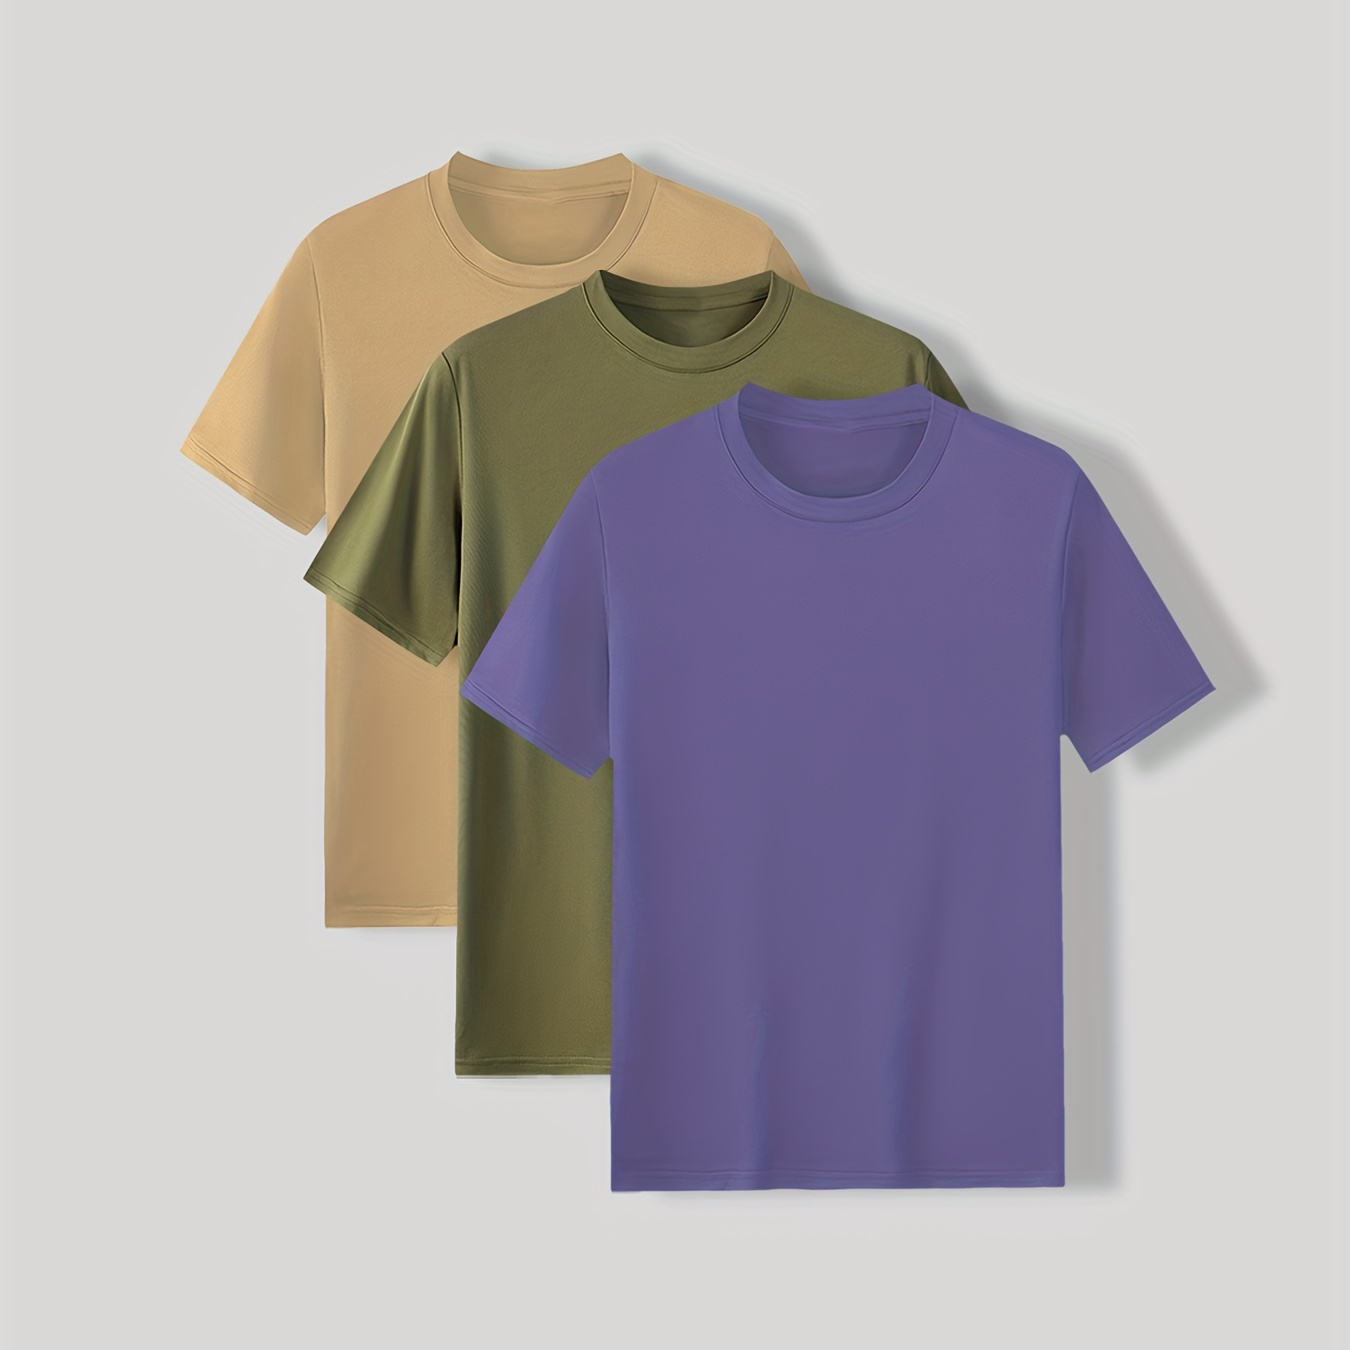 

Ensemble de 3 t-shirts unis pour homme à manches courtes et col rond, idéal pour les activités sportives en extérieur pendant l'été.